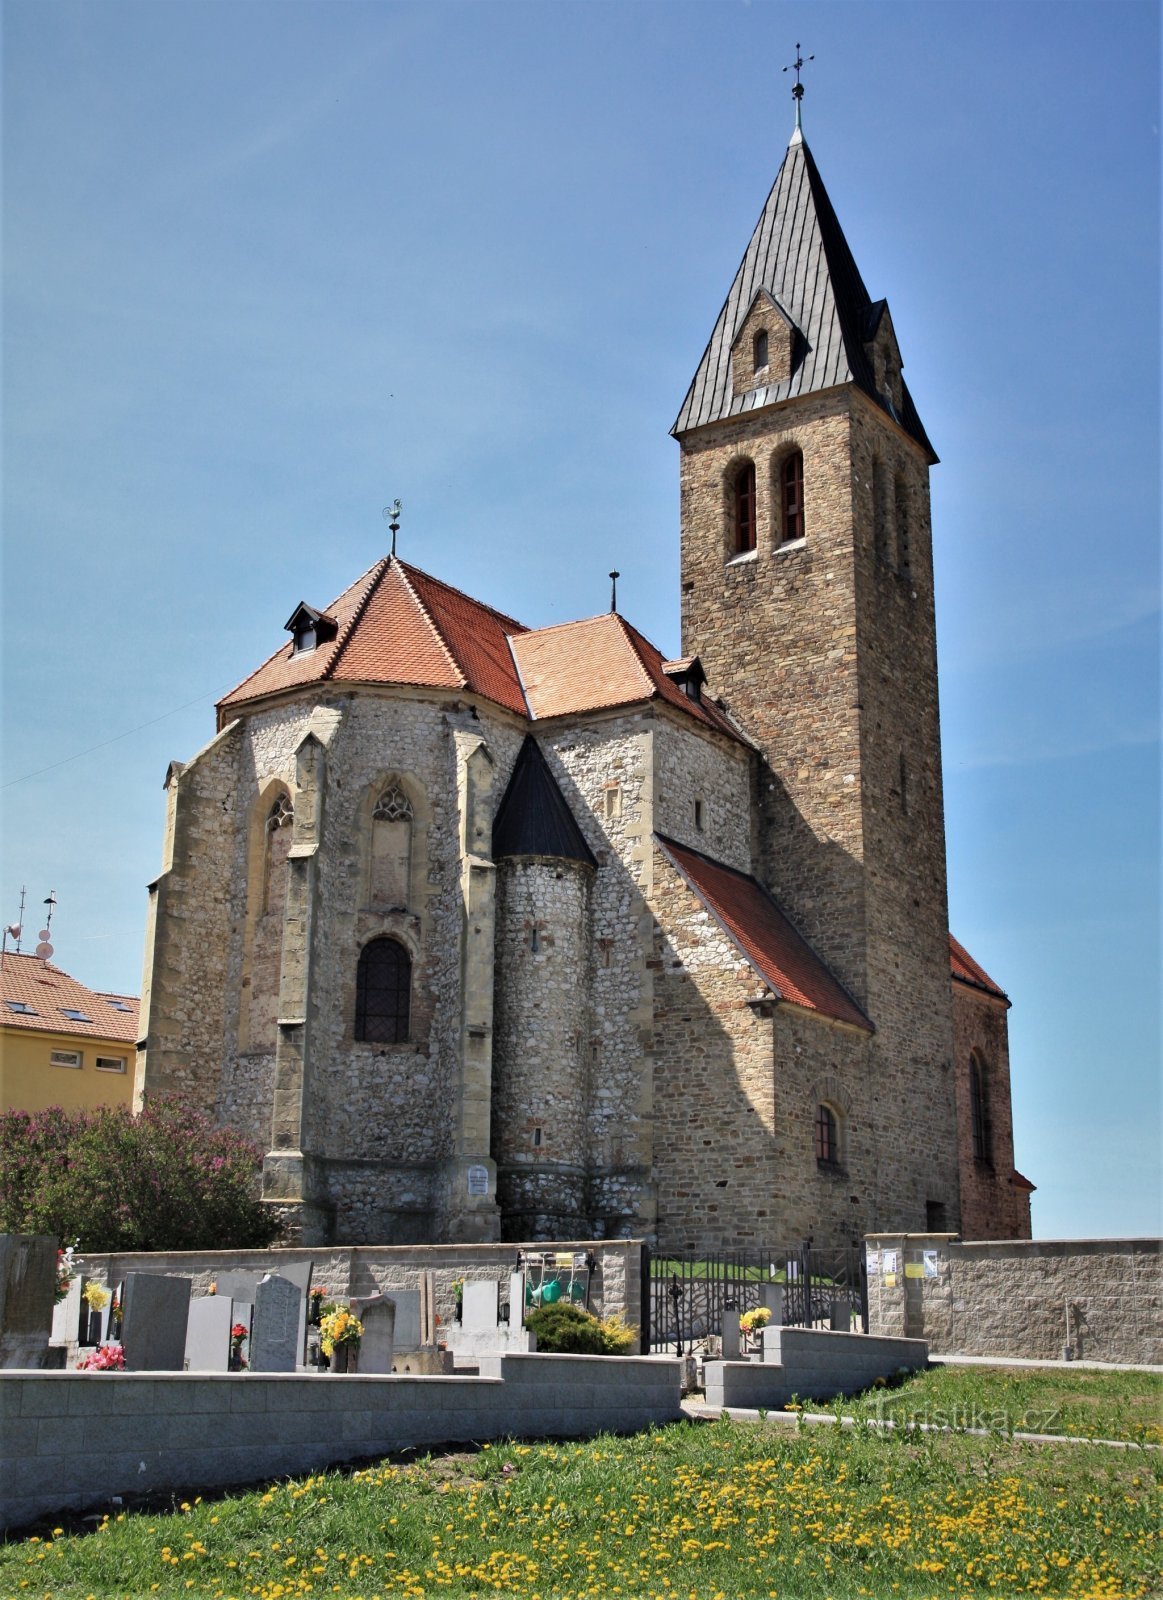 Jaječí - Church of St. Jan Ktitel